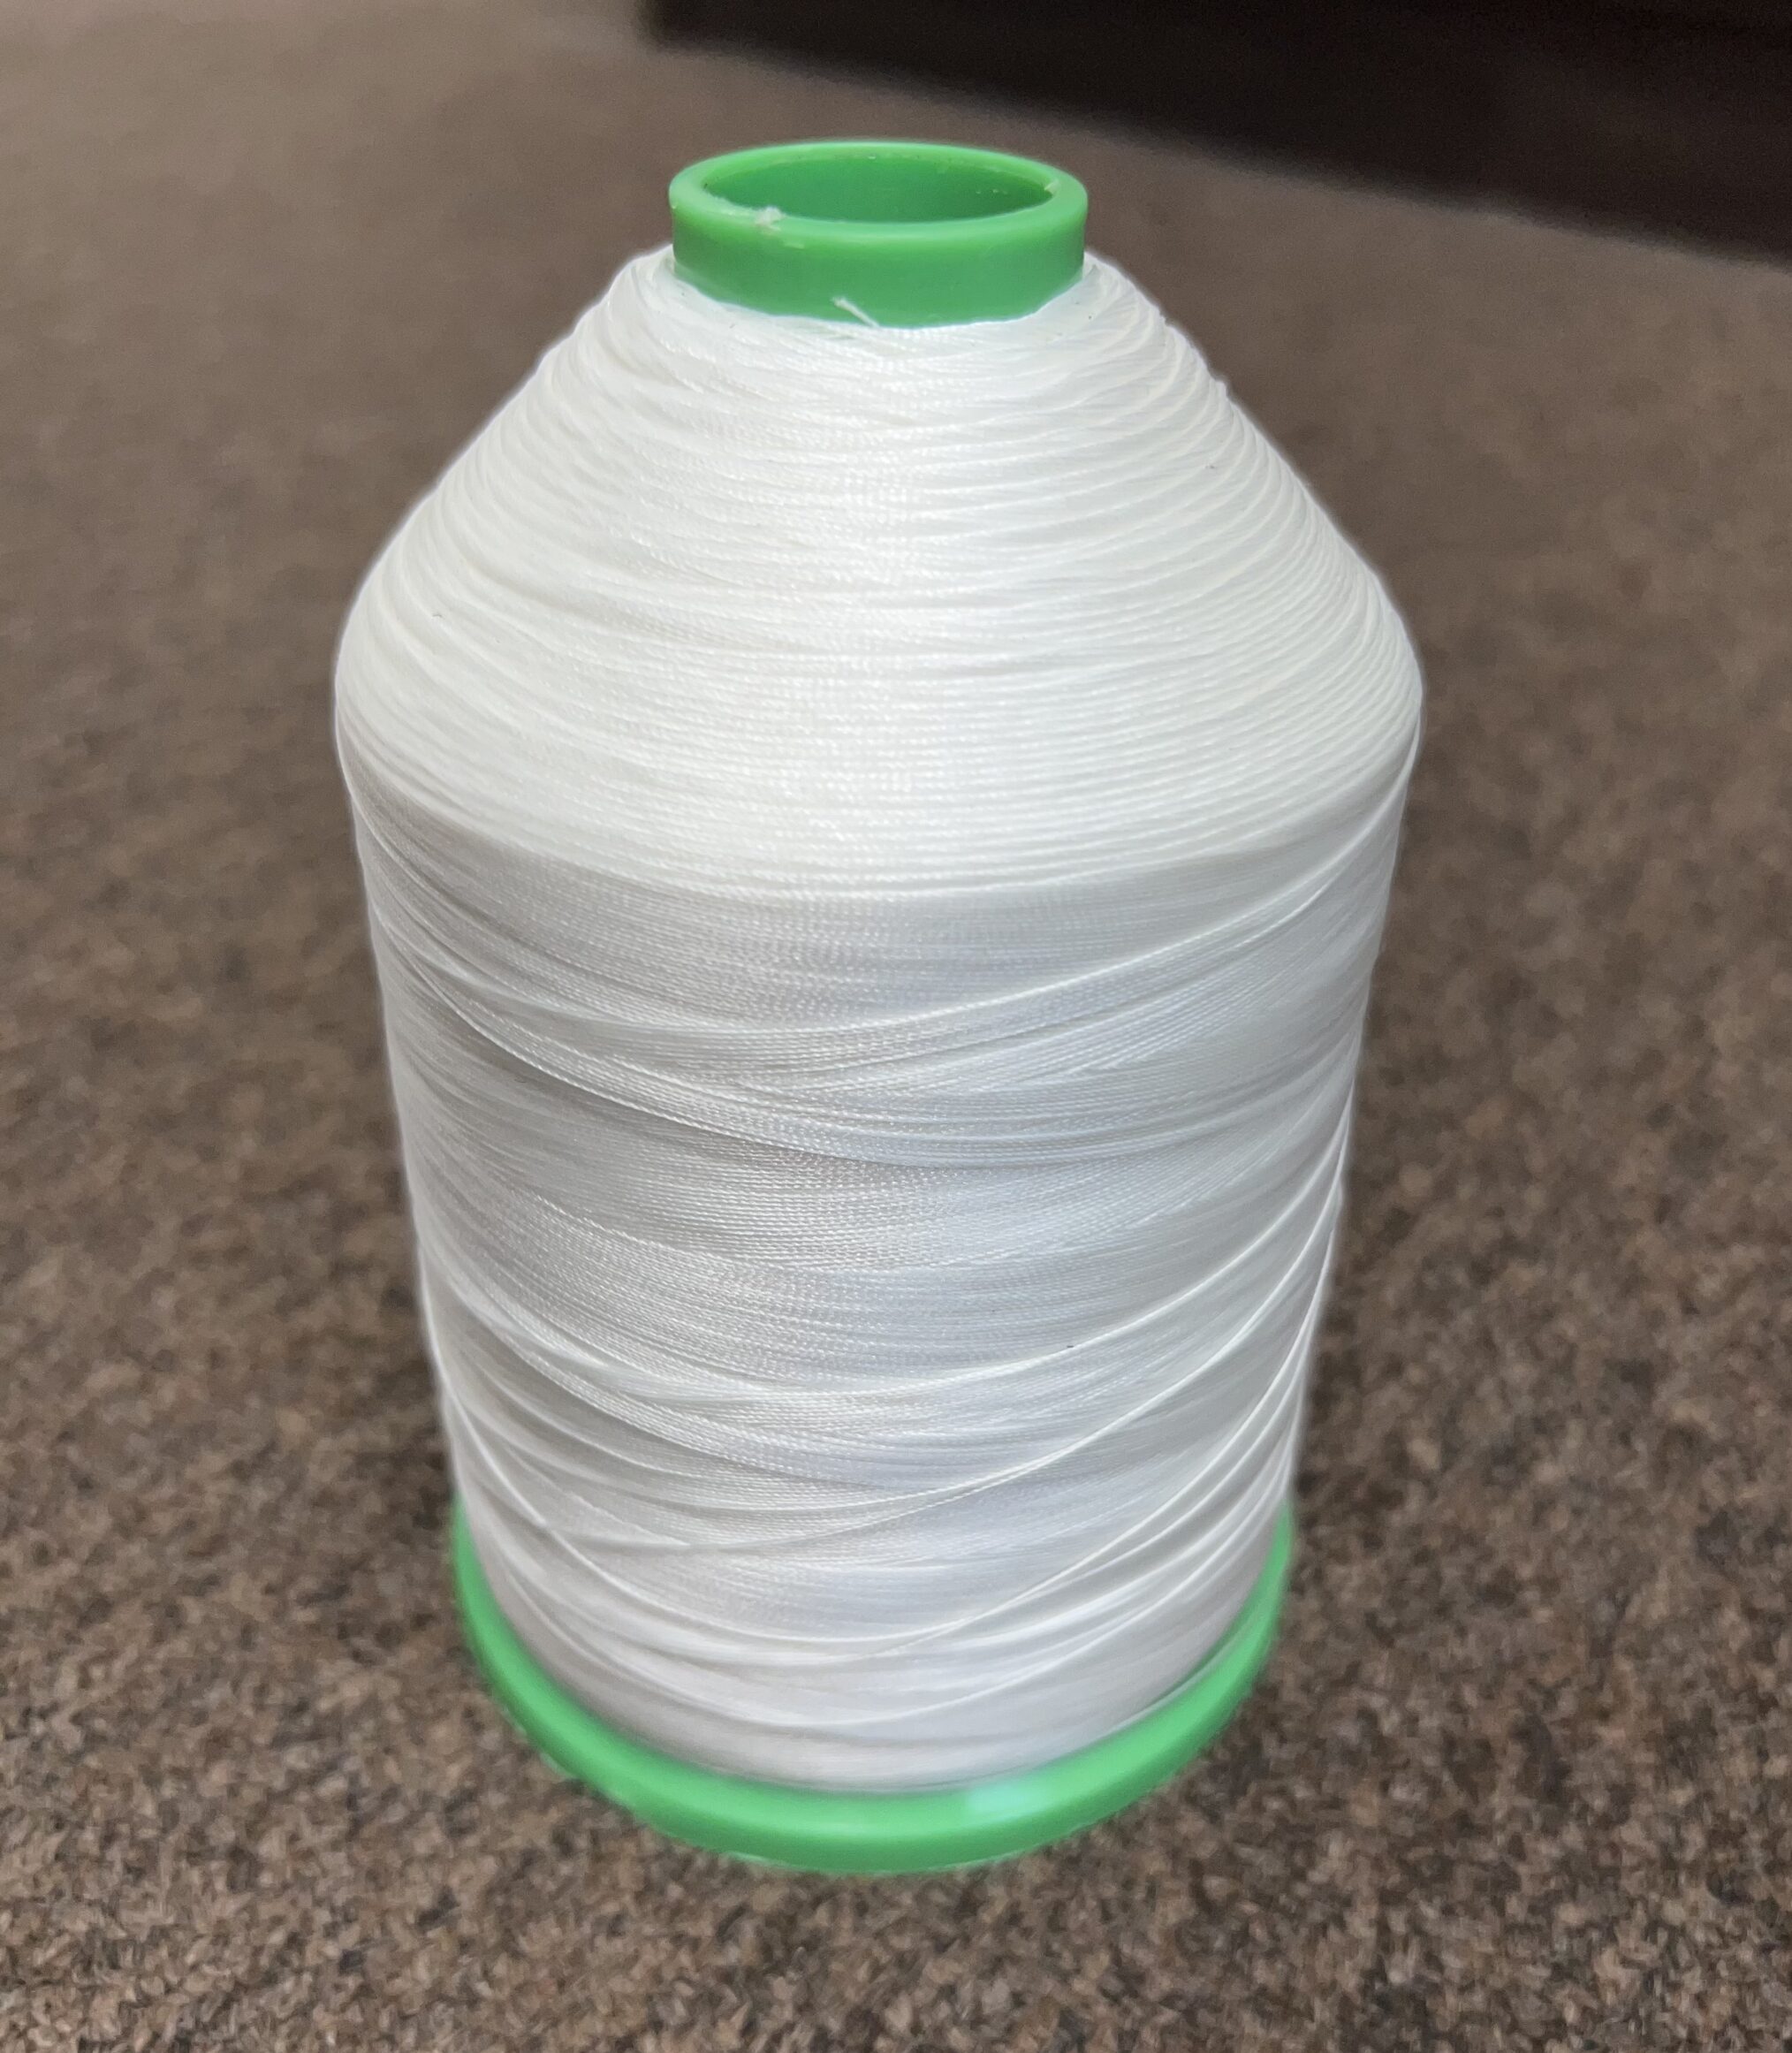 White #69 Bonded Nylon Thread